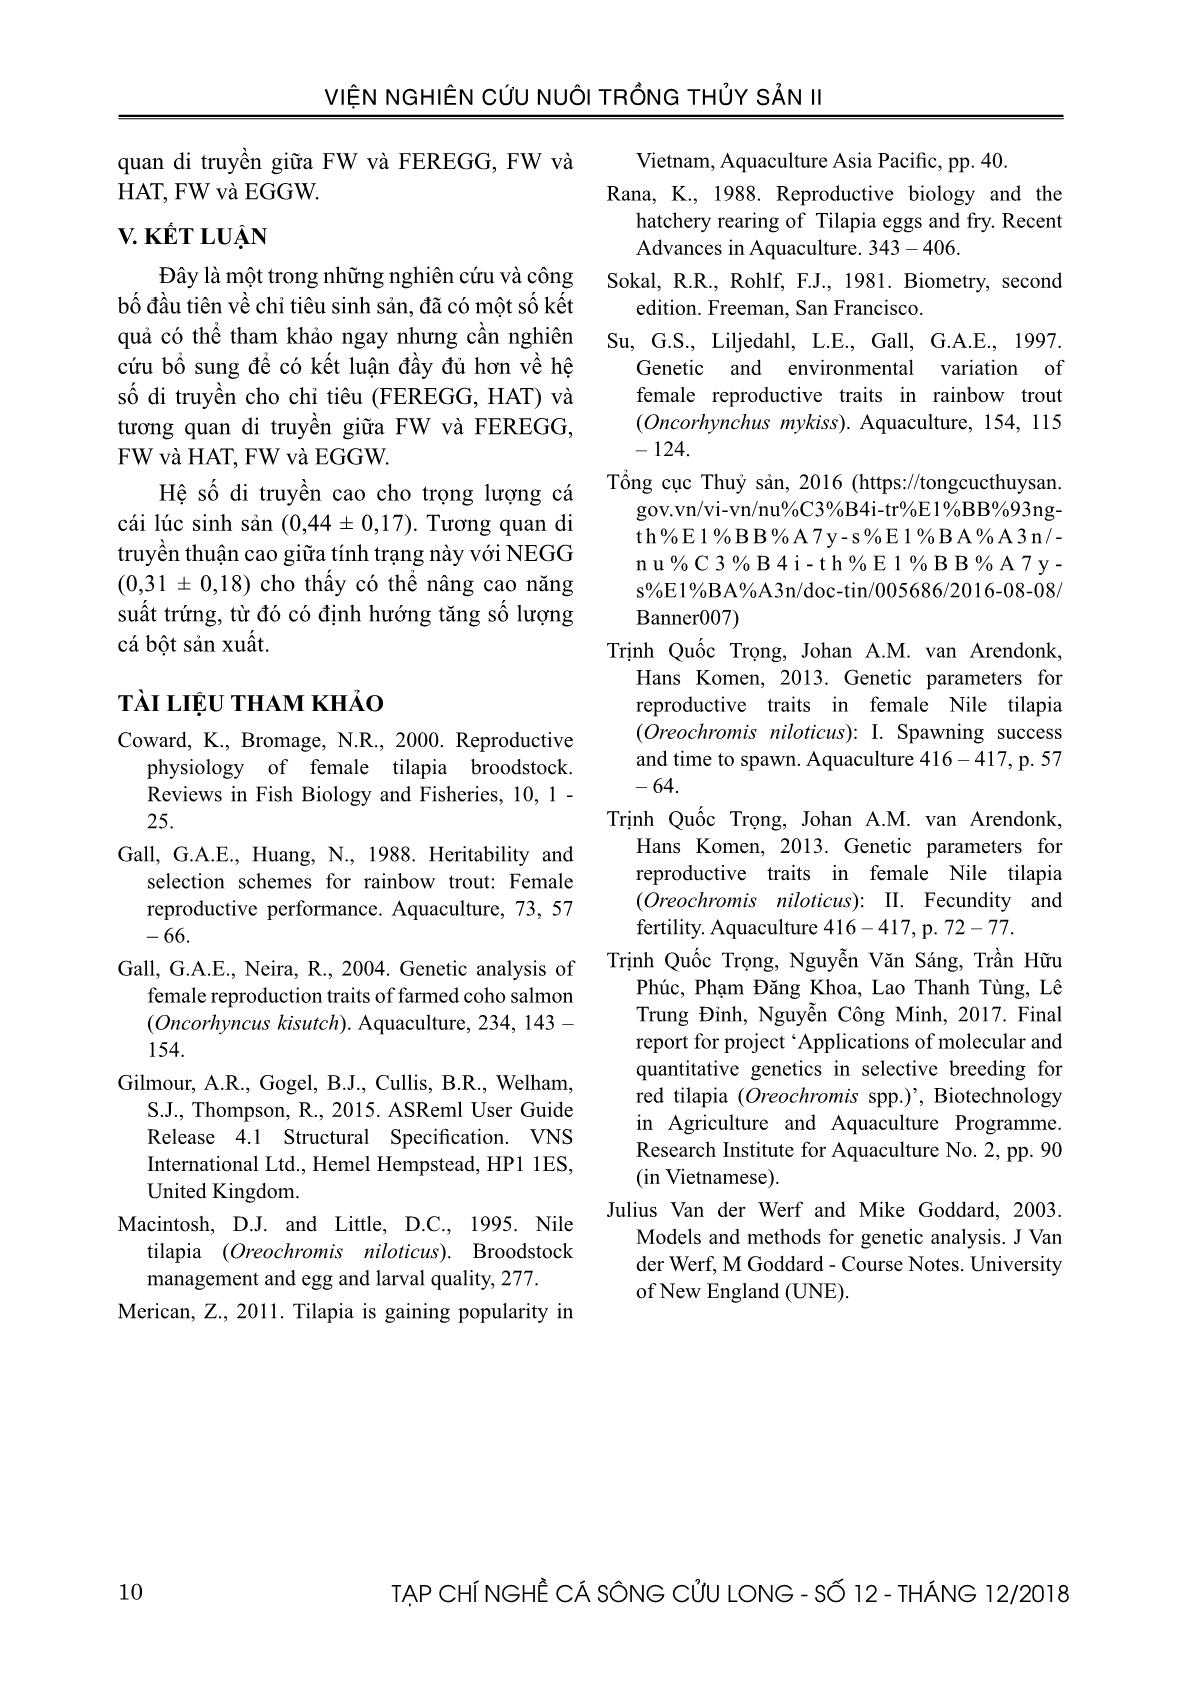 Tạp chí Nghề cá sông Cửu Long - Số 12 - Tháng 12/2018 trang 10